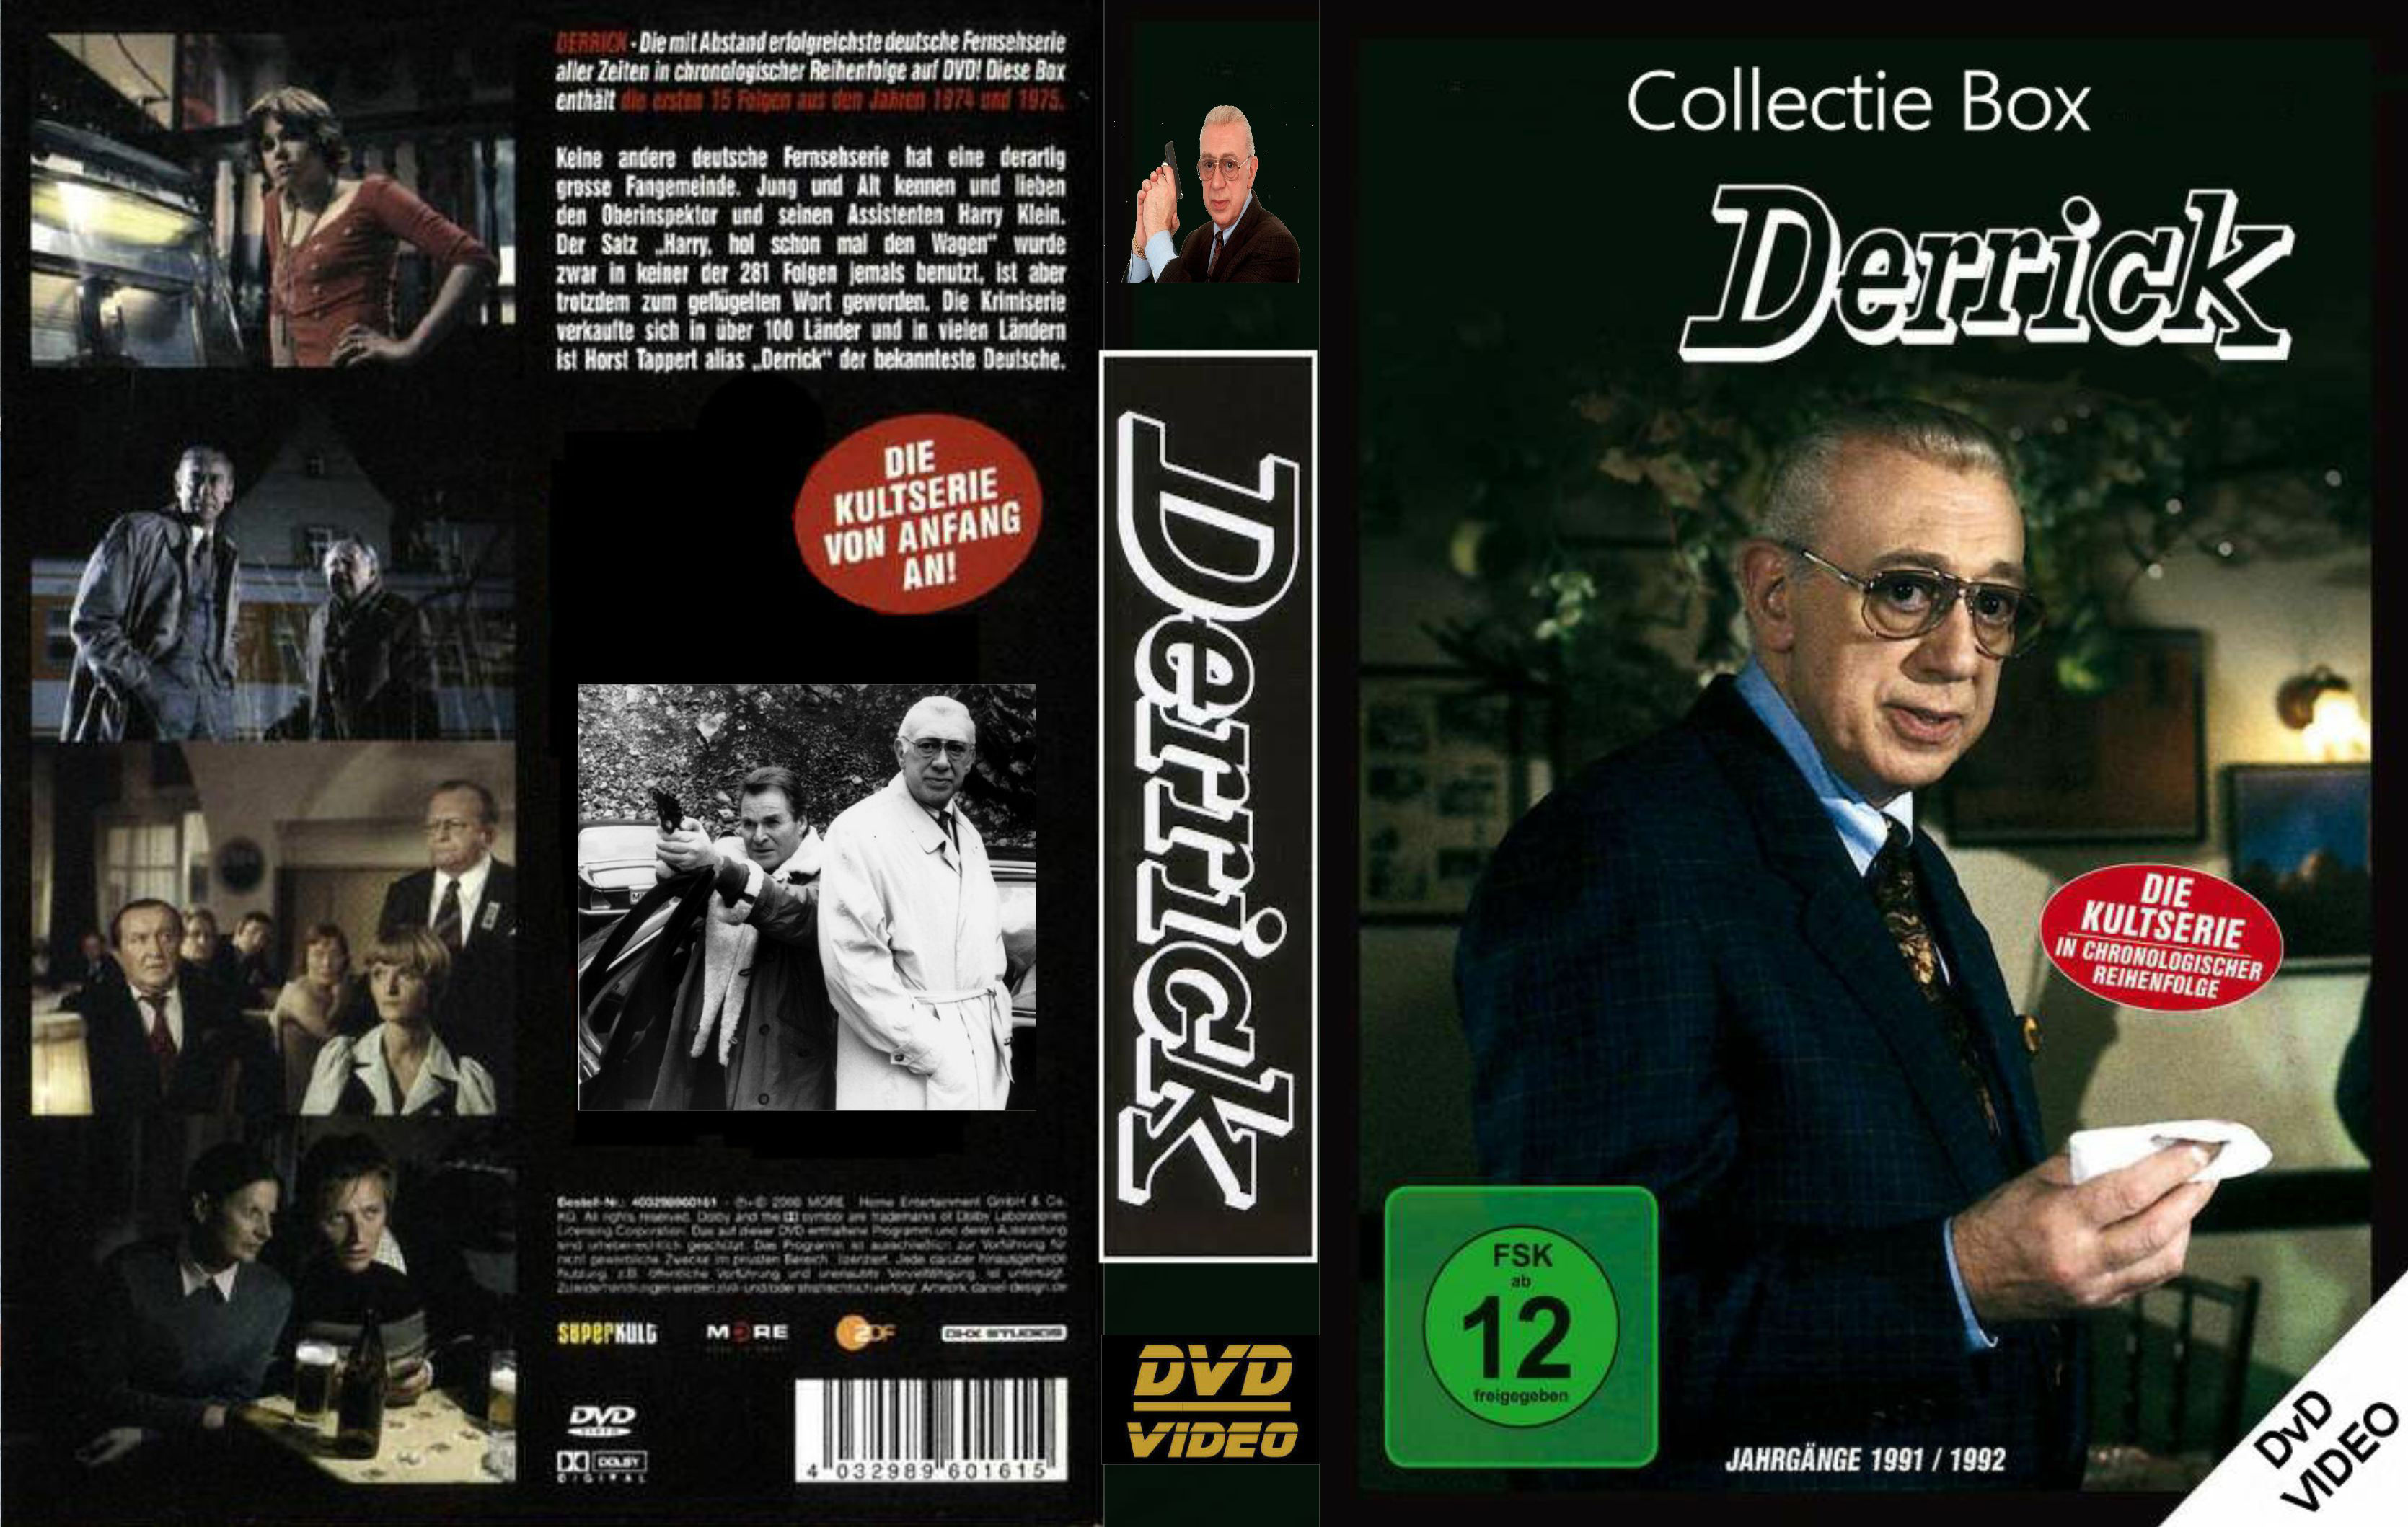 REPOST Derrick Collectie - DvD 1